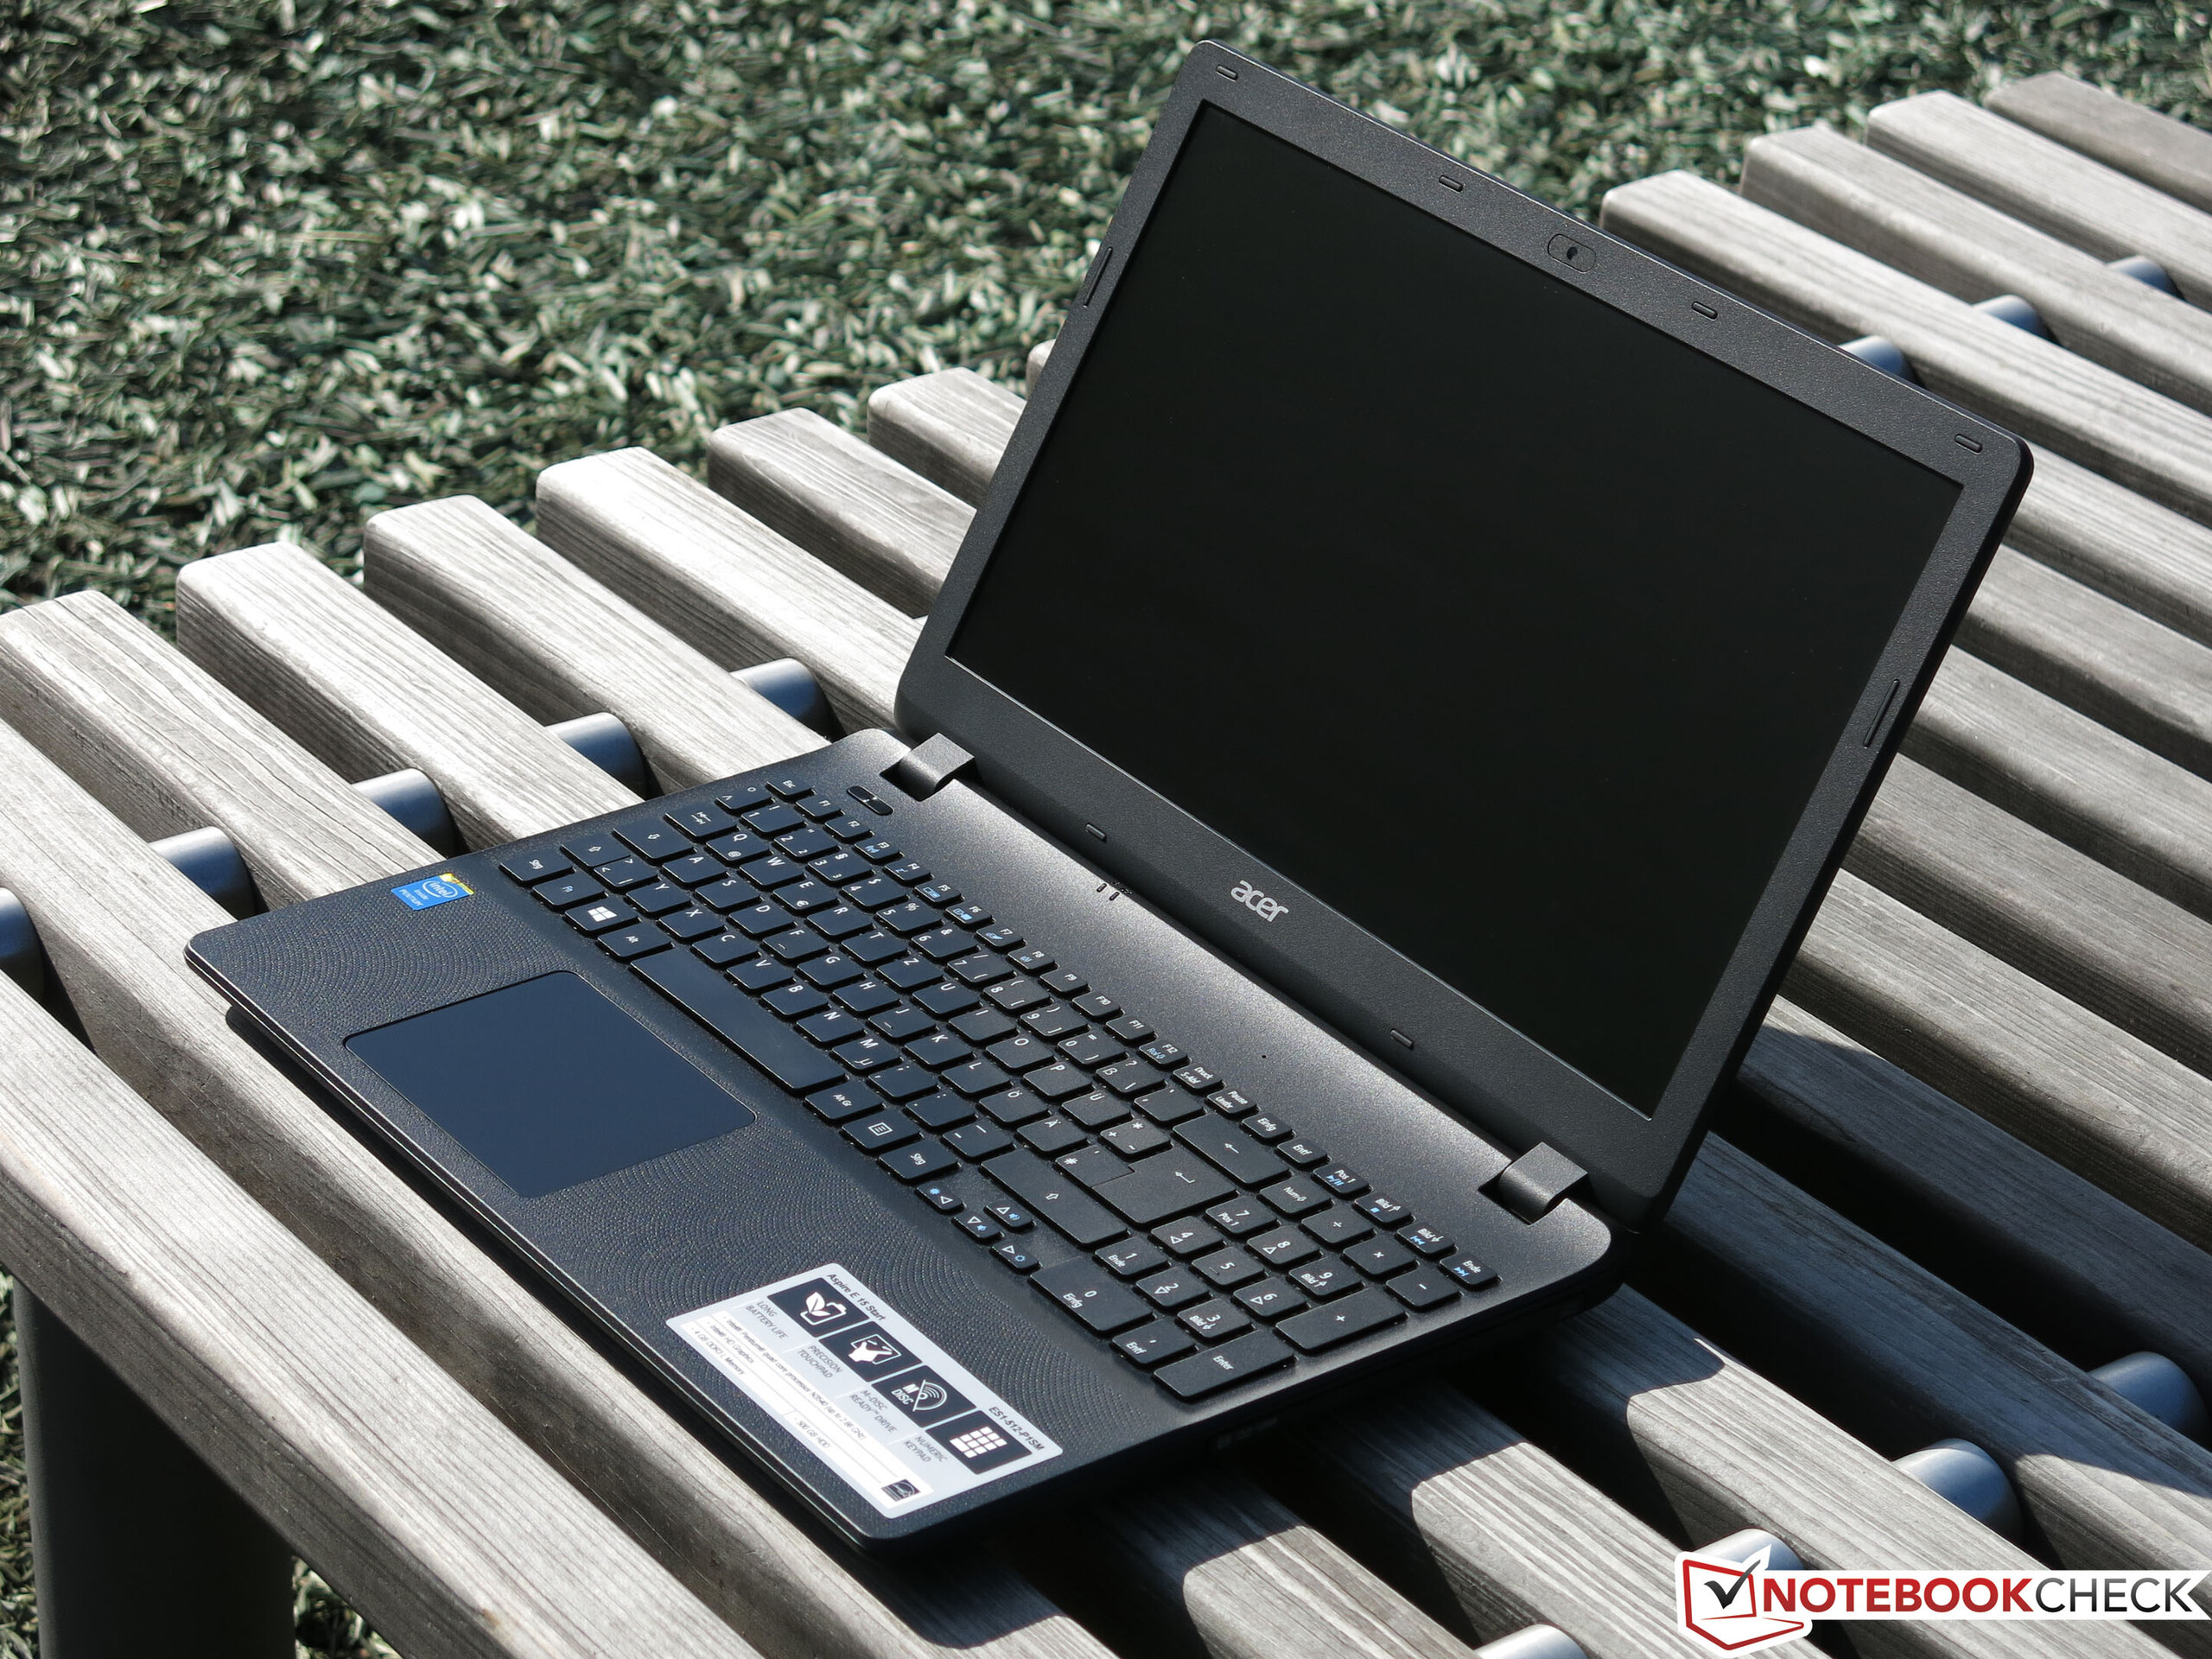 Acer Aspire E15 Start Notebook Review - Reviews